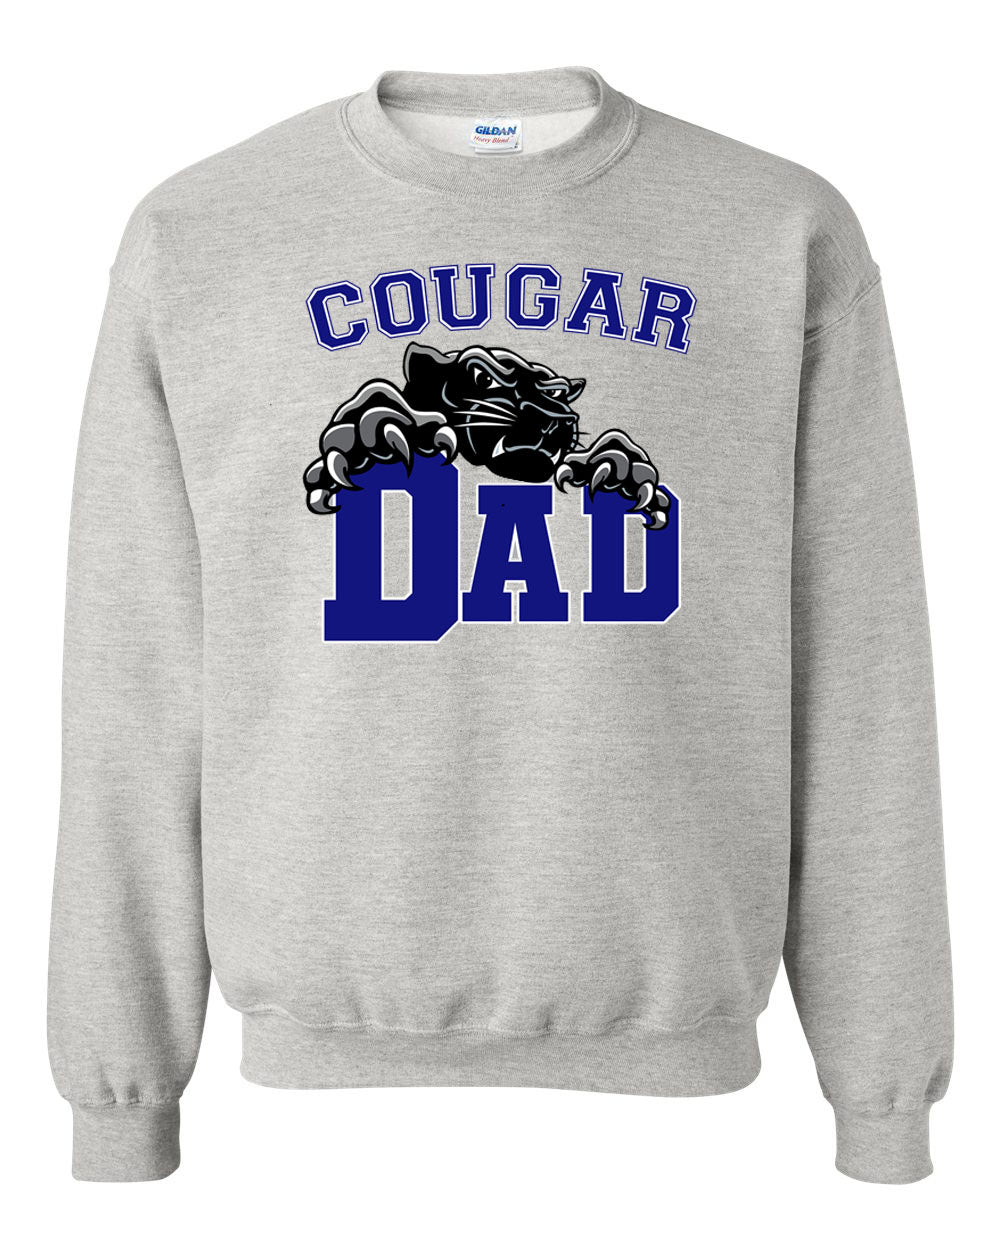 Cougar Dad non hooded sweatshirt